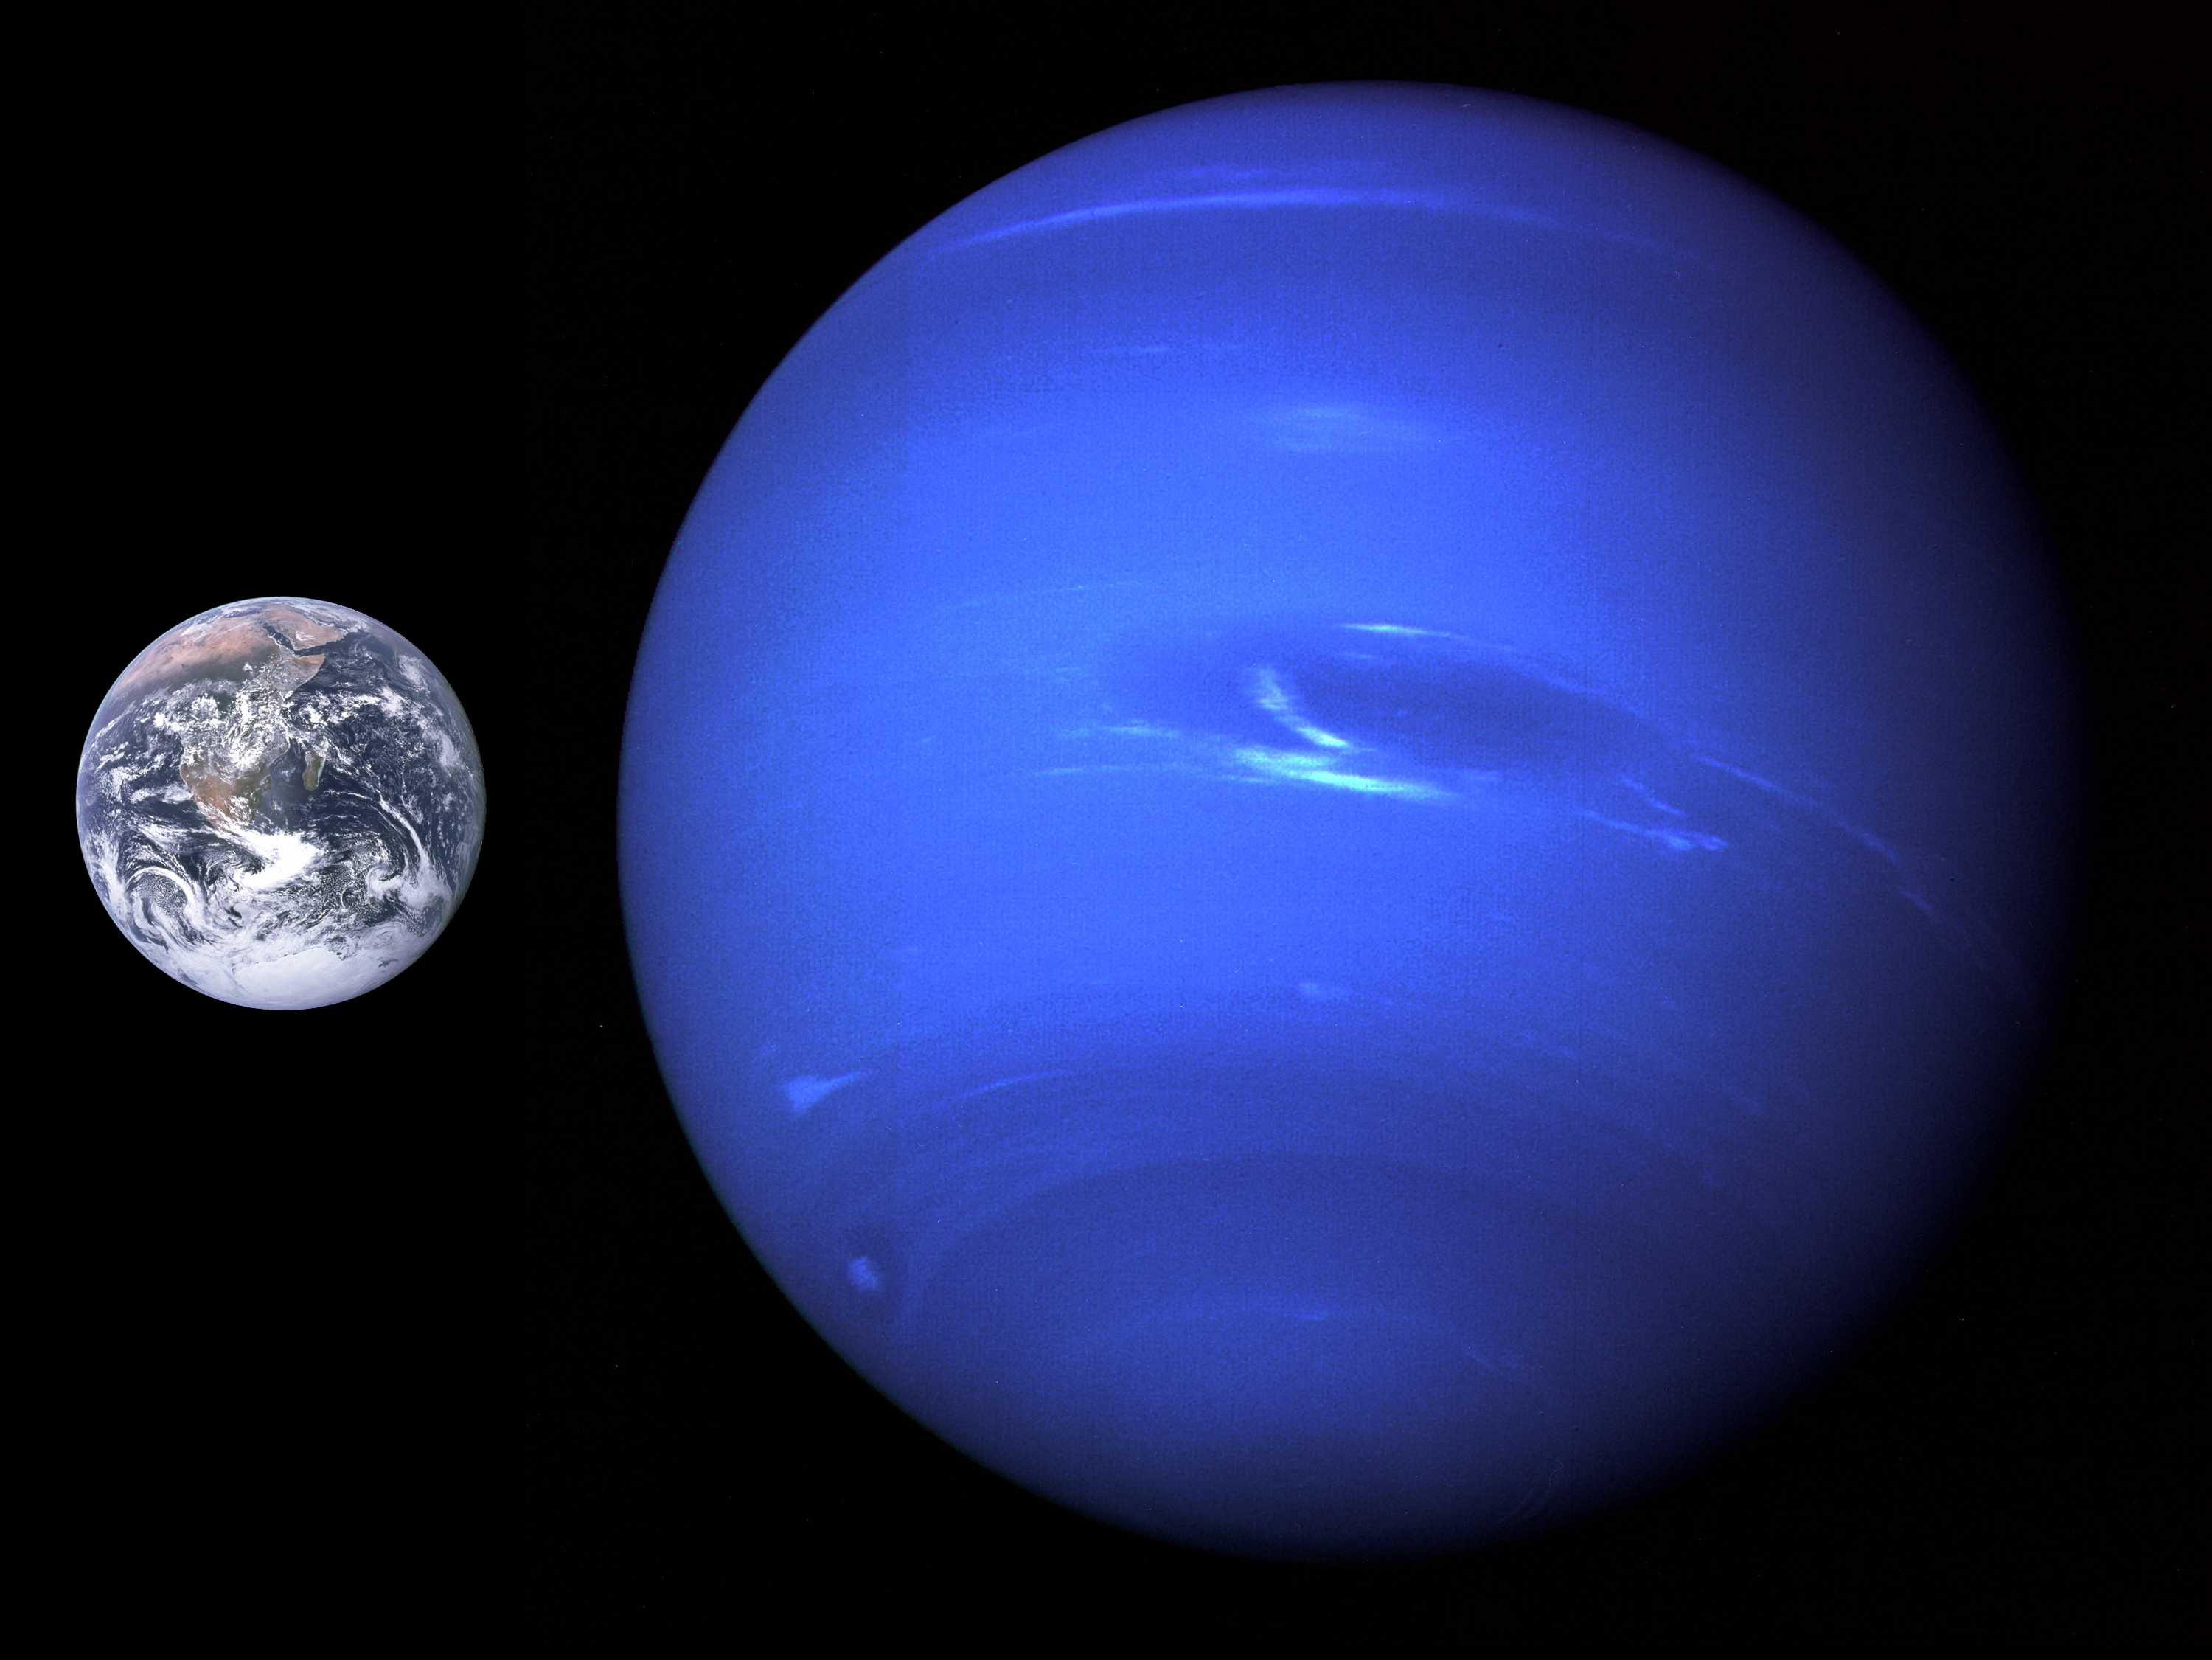 Строение нептуна и сравнение его размеров и массы с землей